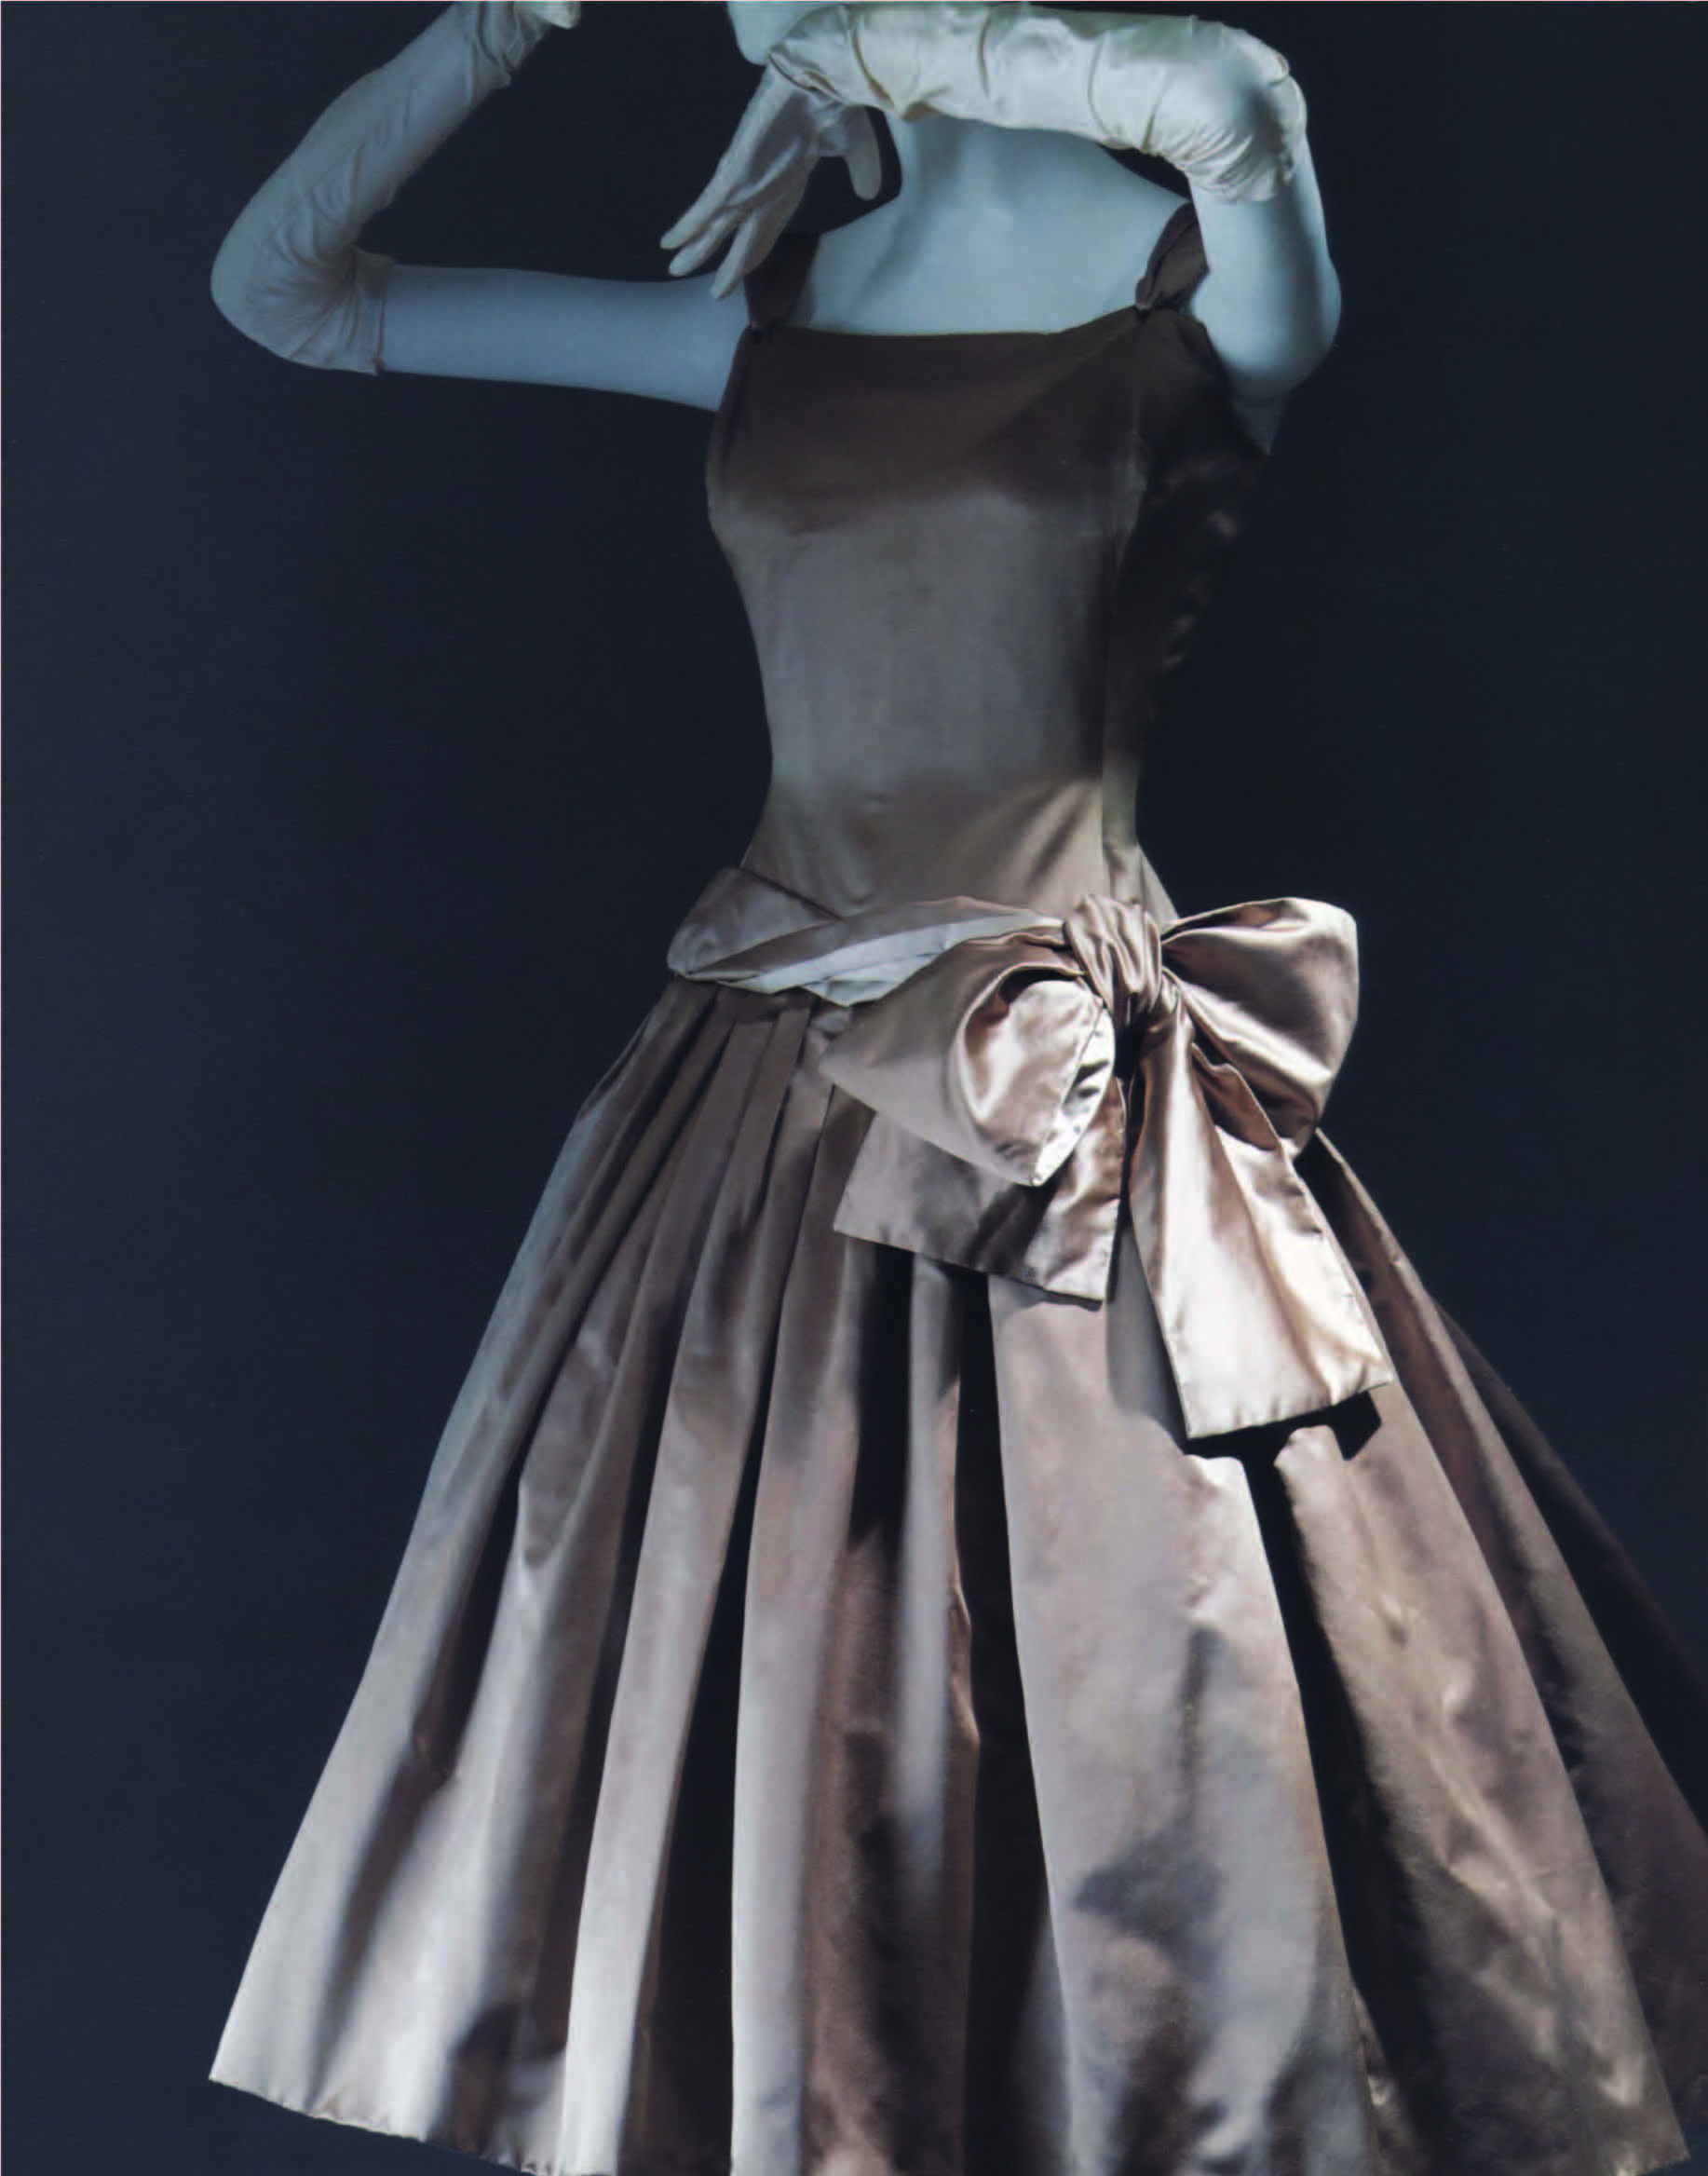 《迪奥: 梦之设计师》上海特展隆重登场Christian Dior: Designer of Dreams in Shanghai